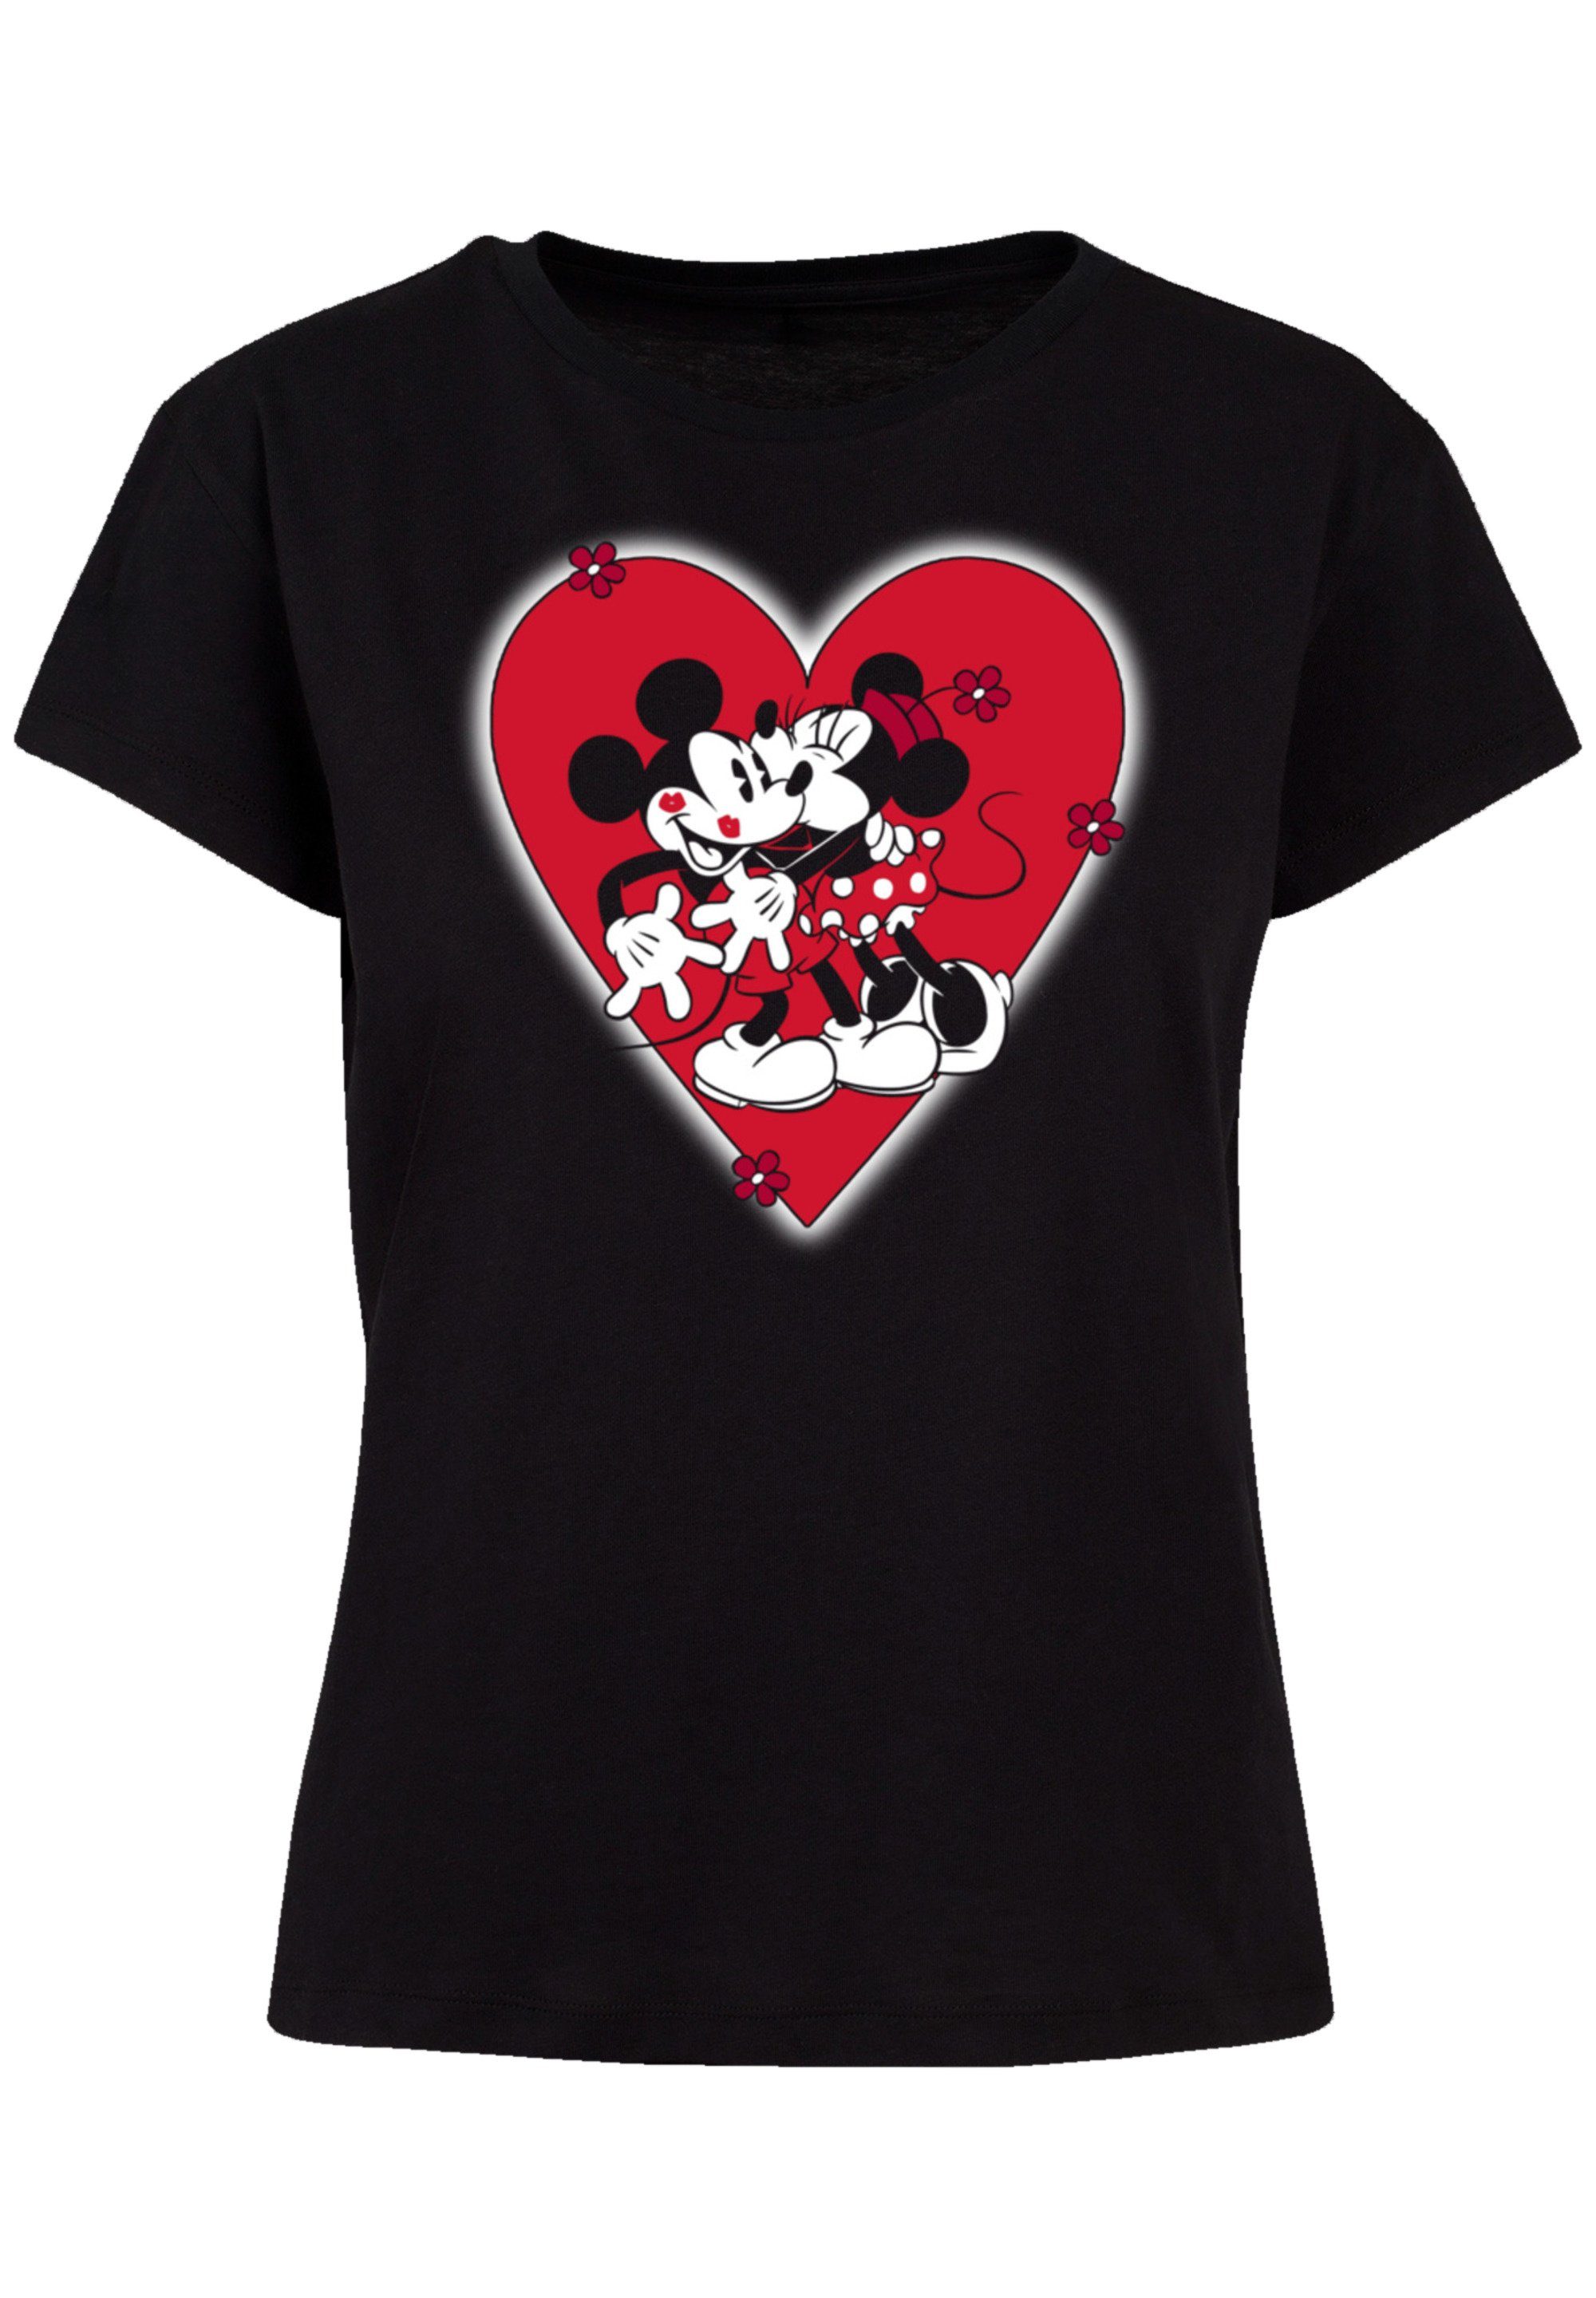 Micky Verarbeitung T-Shirt Disney hochwertige und Passform Qualität, Together F4NT4STIC Perfekte Maus Premium